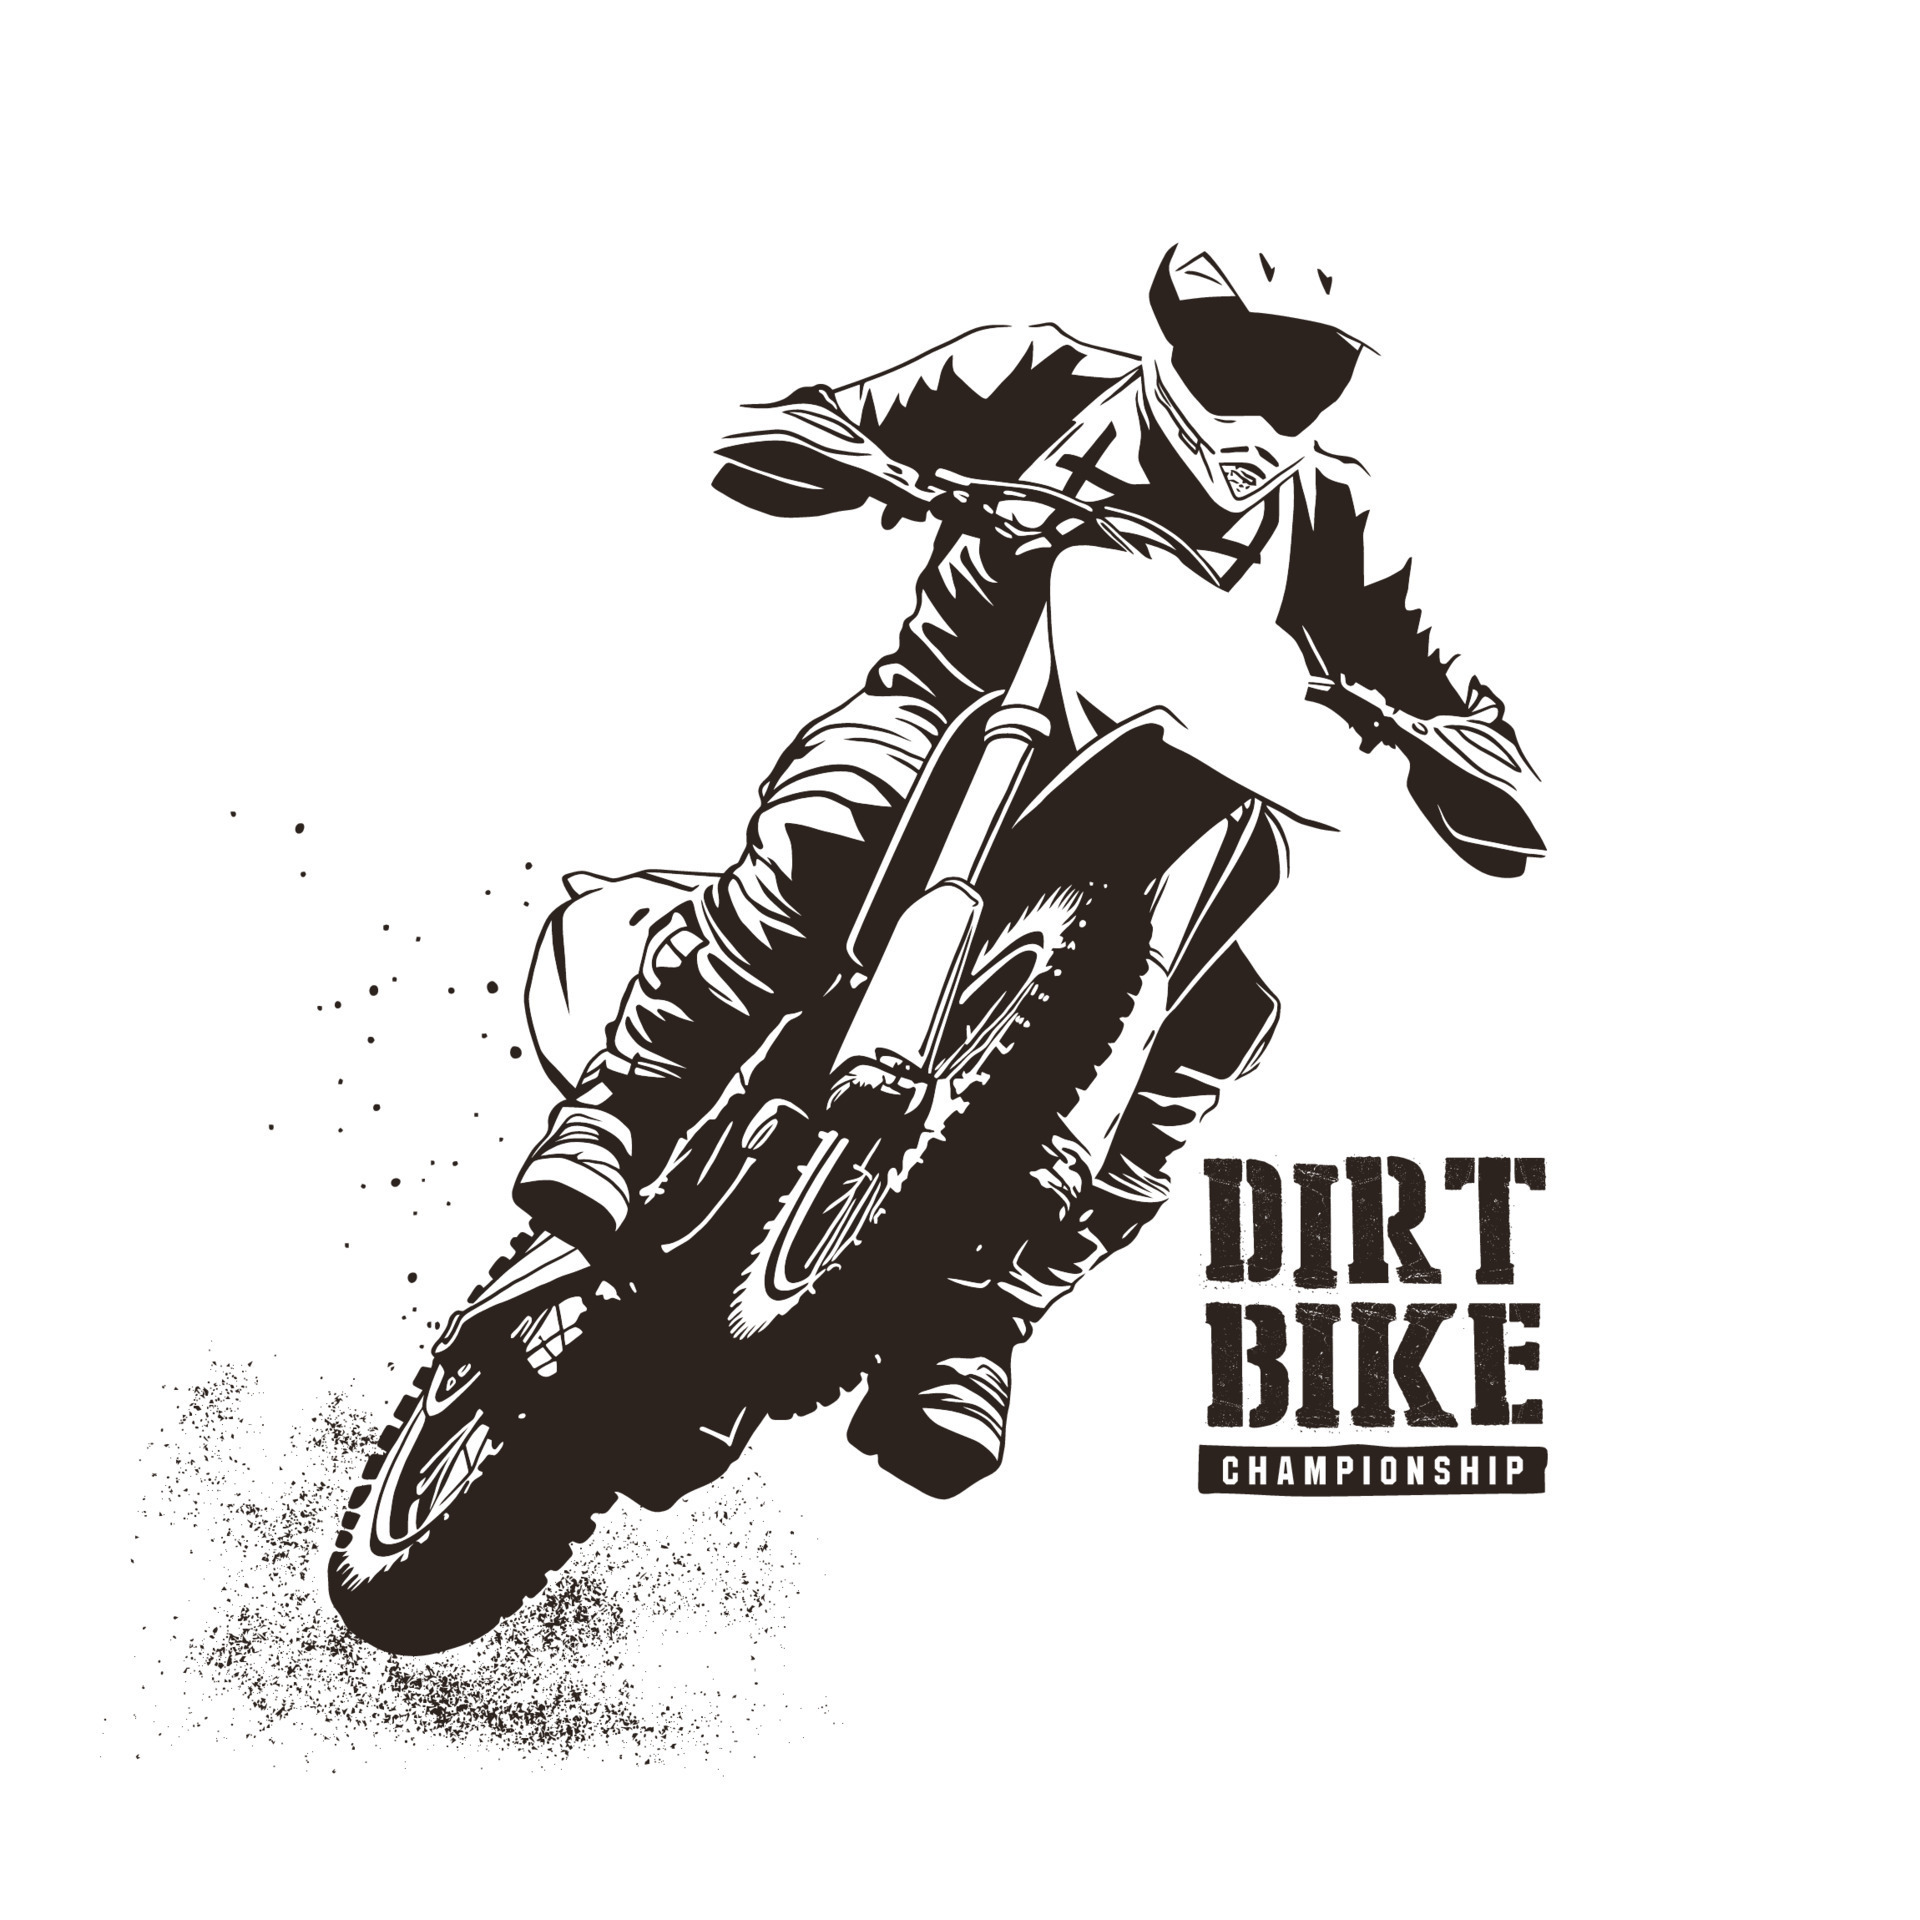 Rider participates motocross championship. Vector illustration.Rider